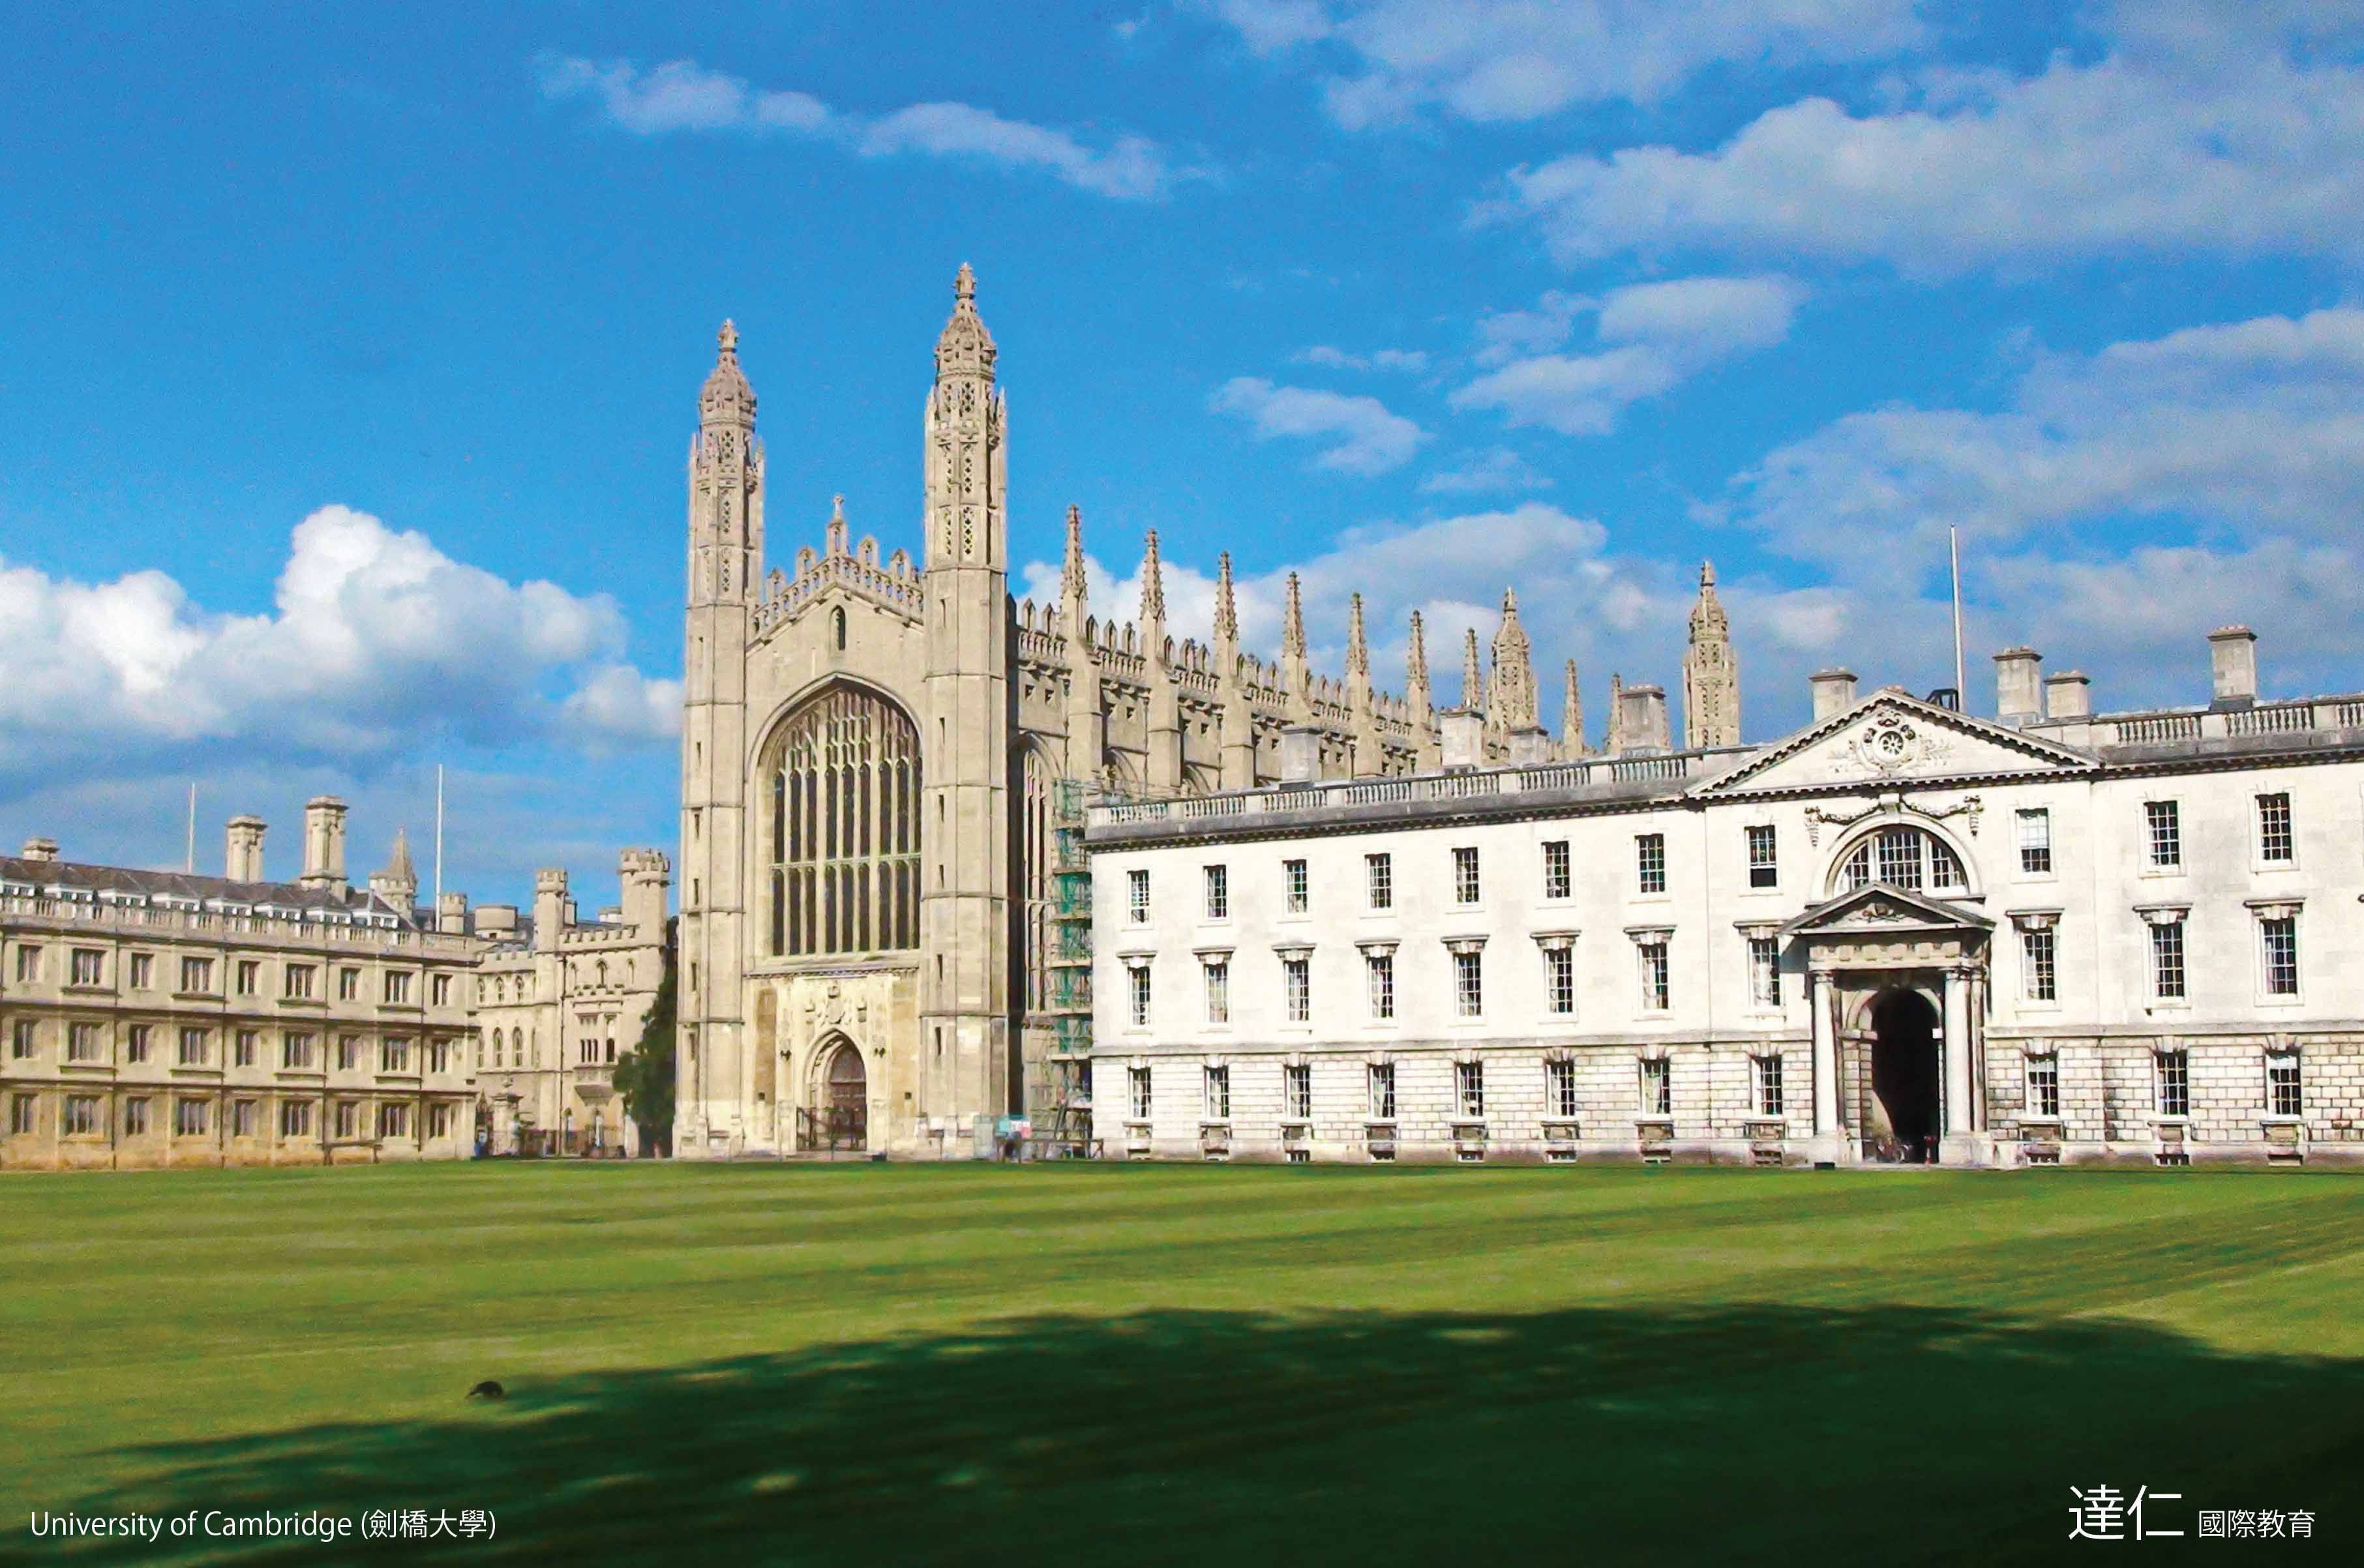 劍橋大學 University of Cambridge